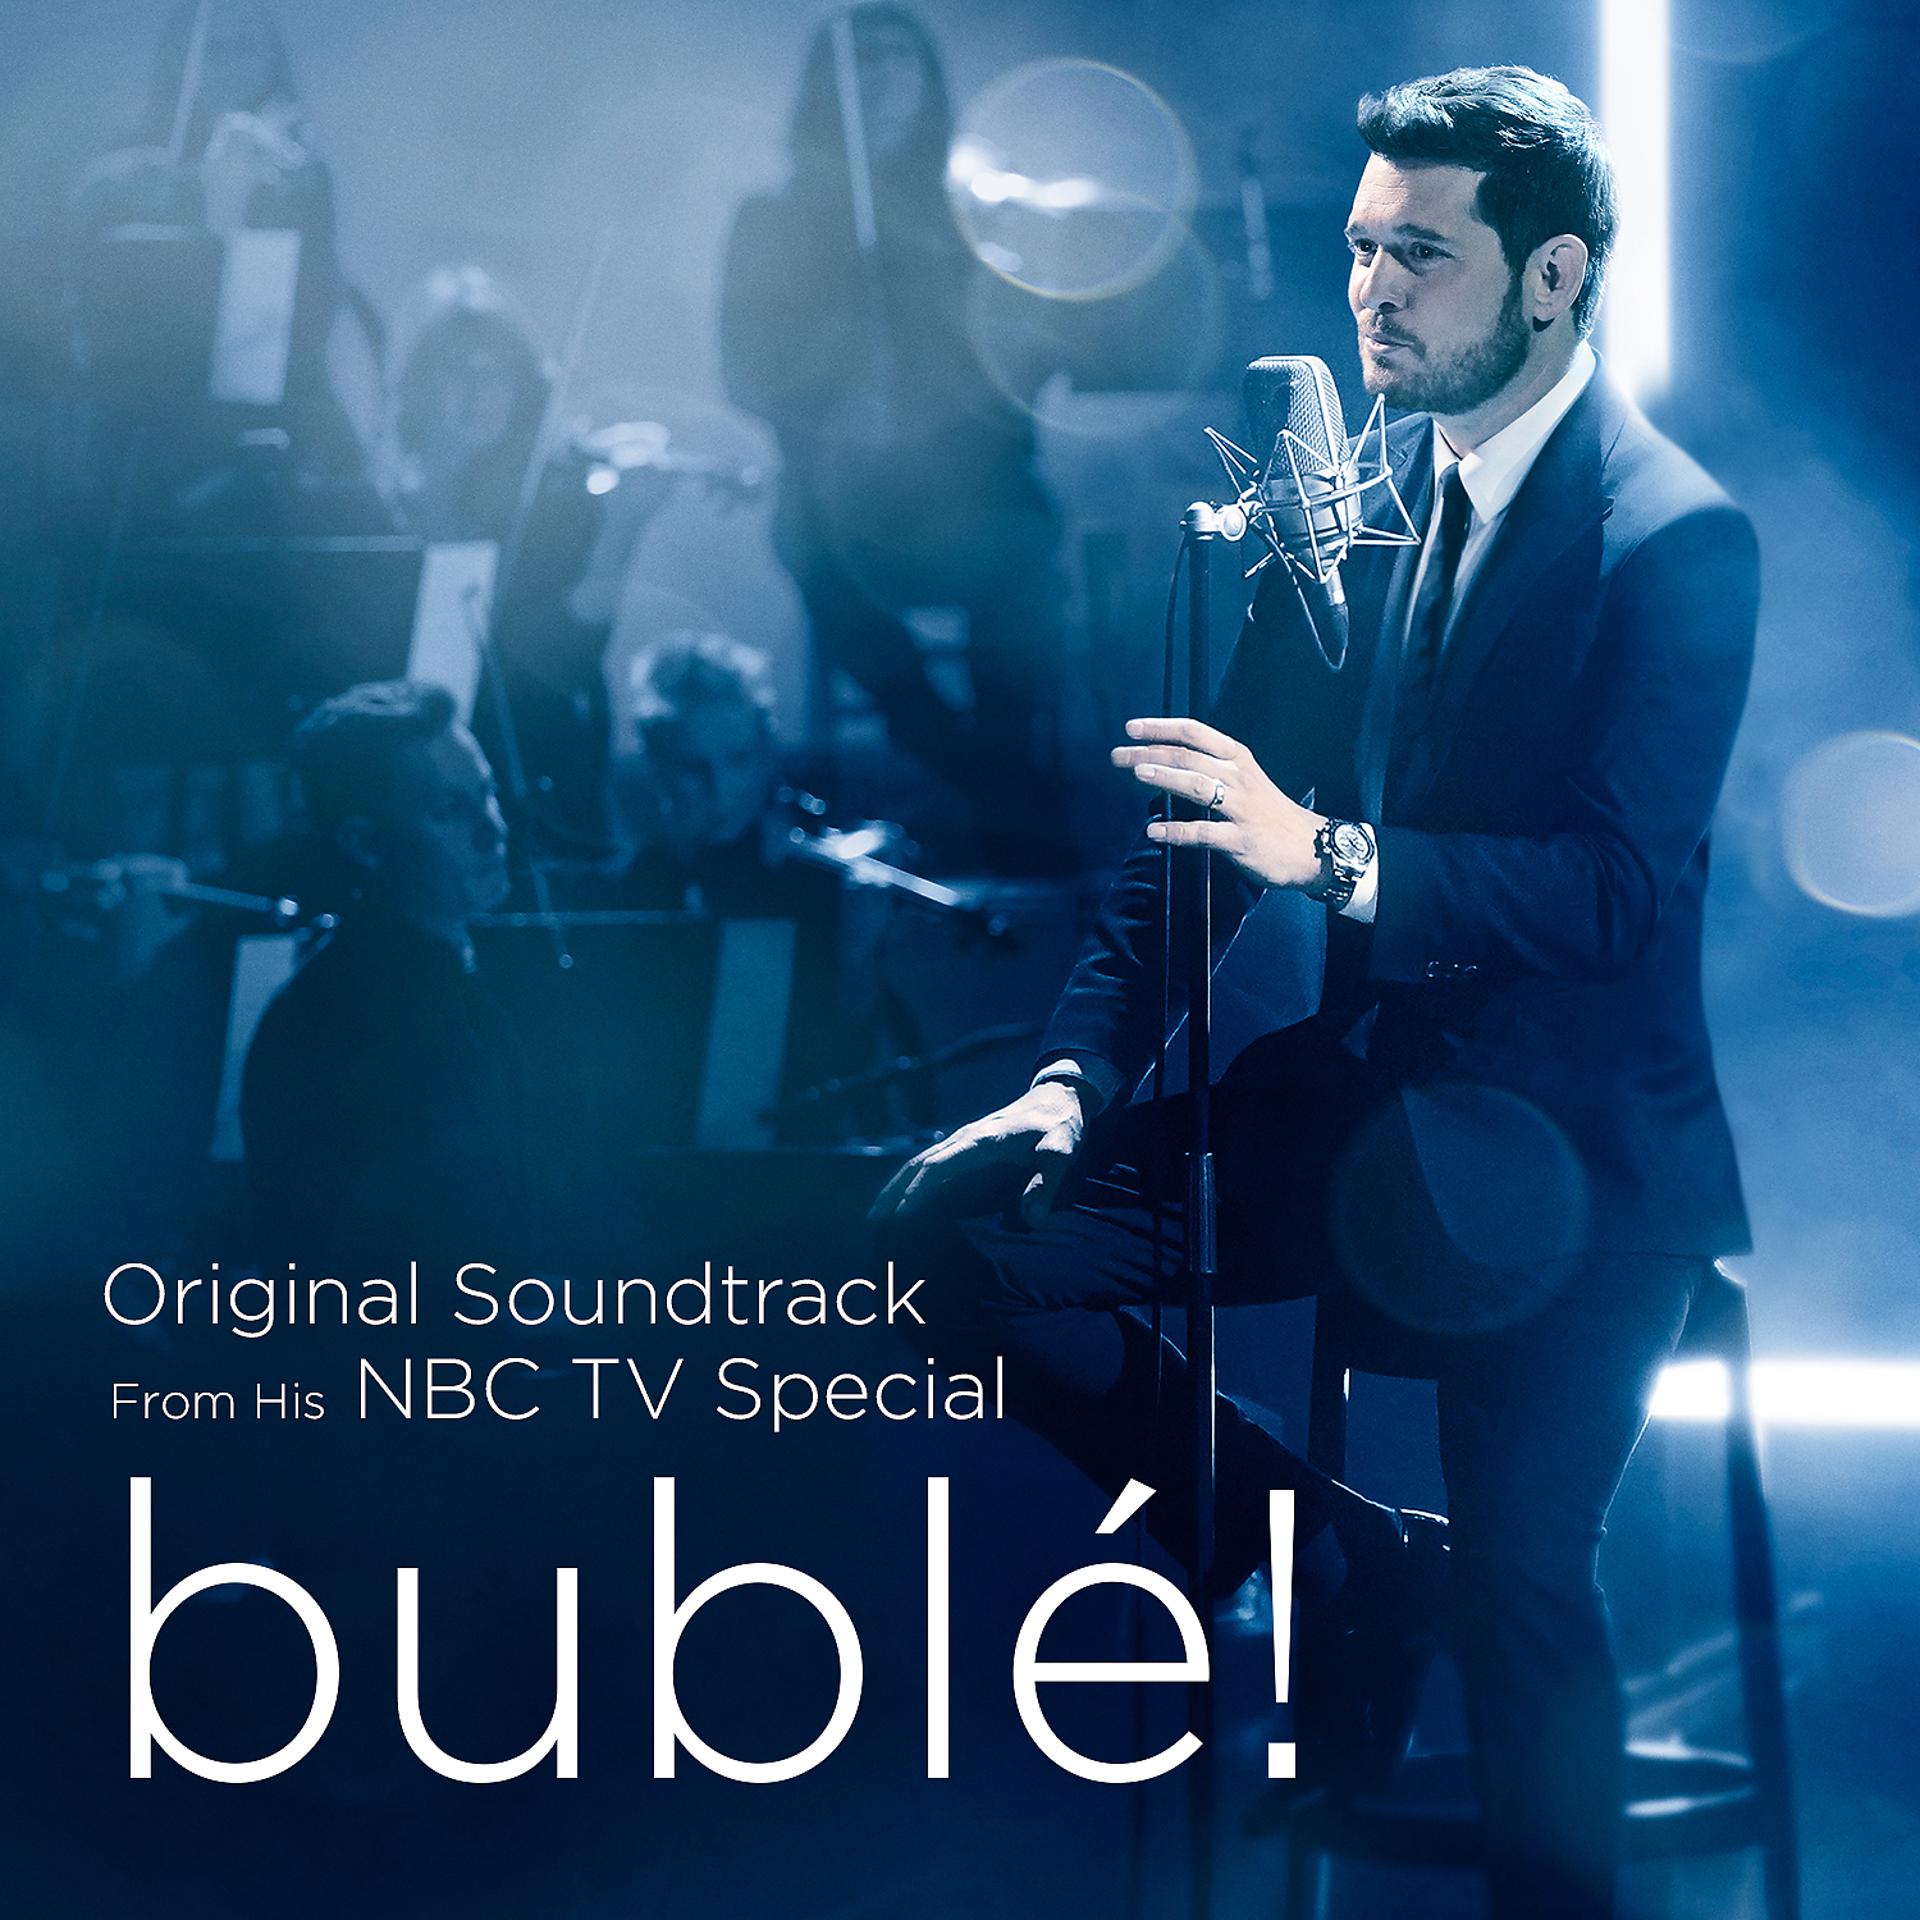 Feeling good Michael Buble обложка. Album Michael Buble. Michael Buble feeling good album. Sometimes good feeling